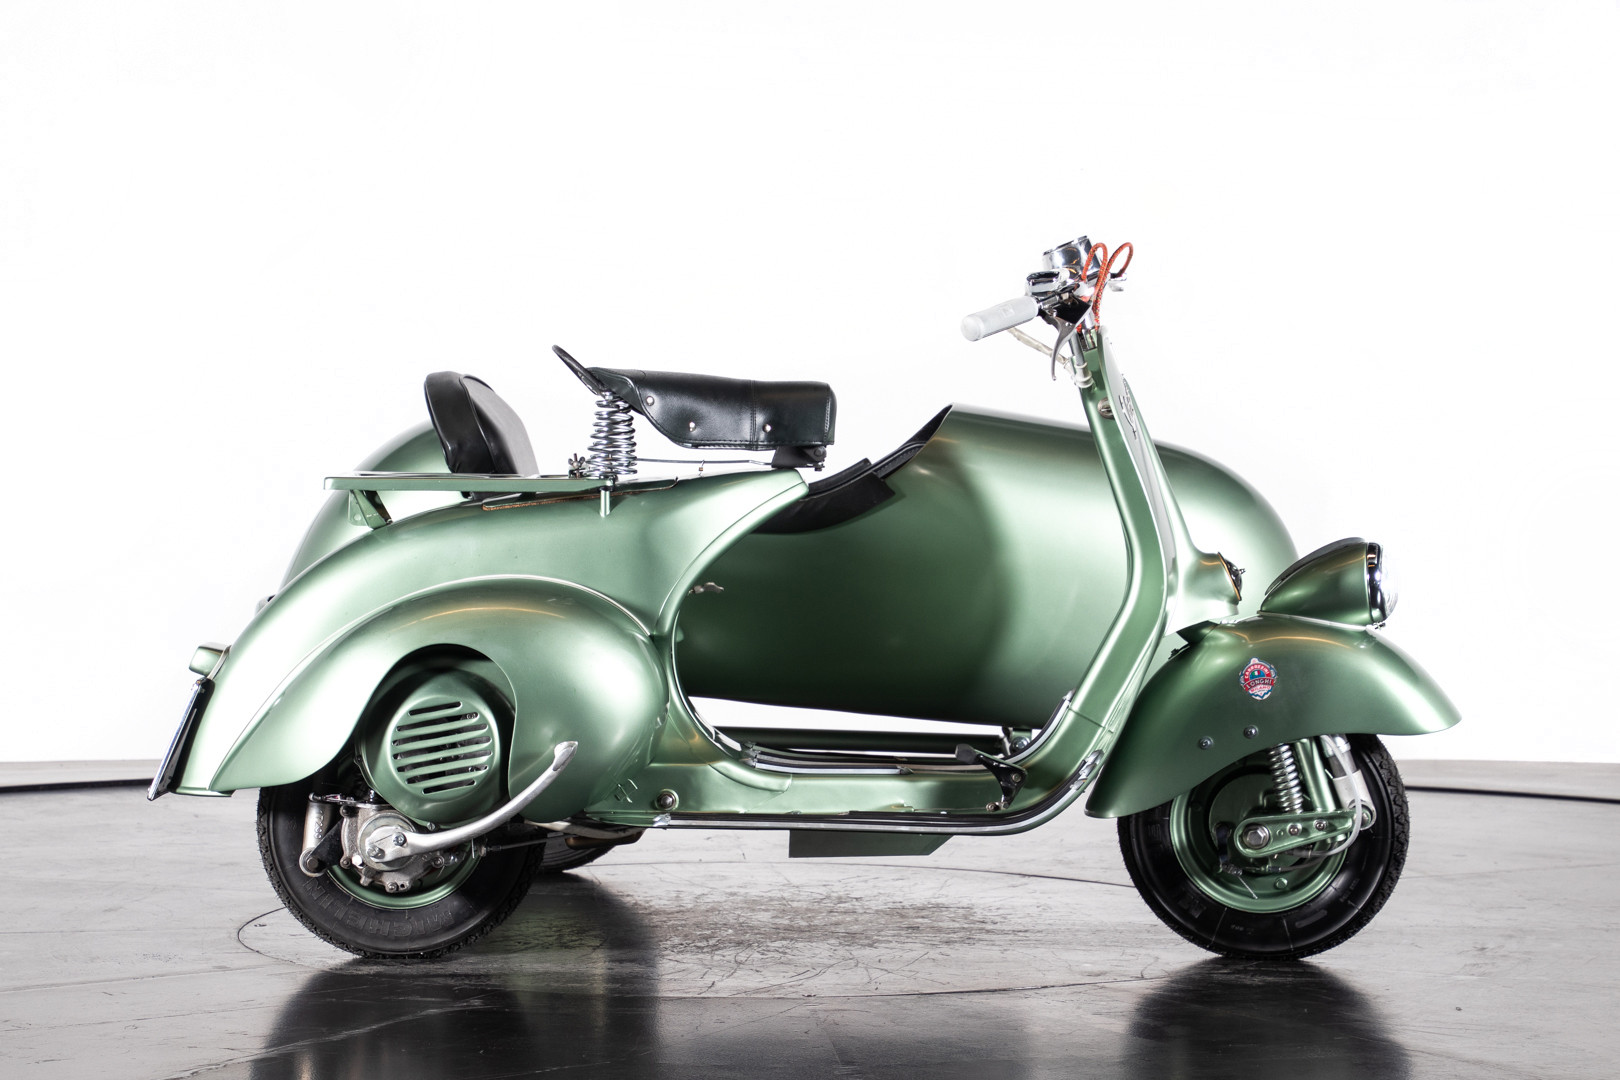 1951 Piaggio Vespa V31T Sidecar - Piaggio - Classic motorbikes - Ruote ...